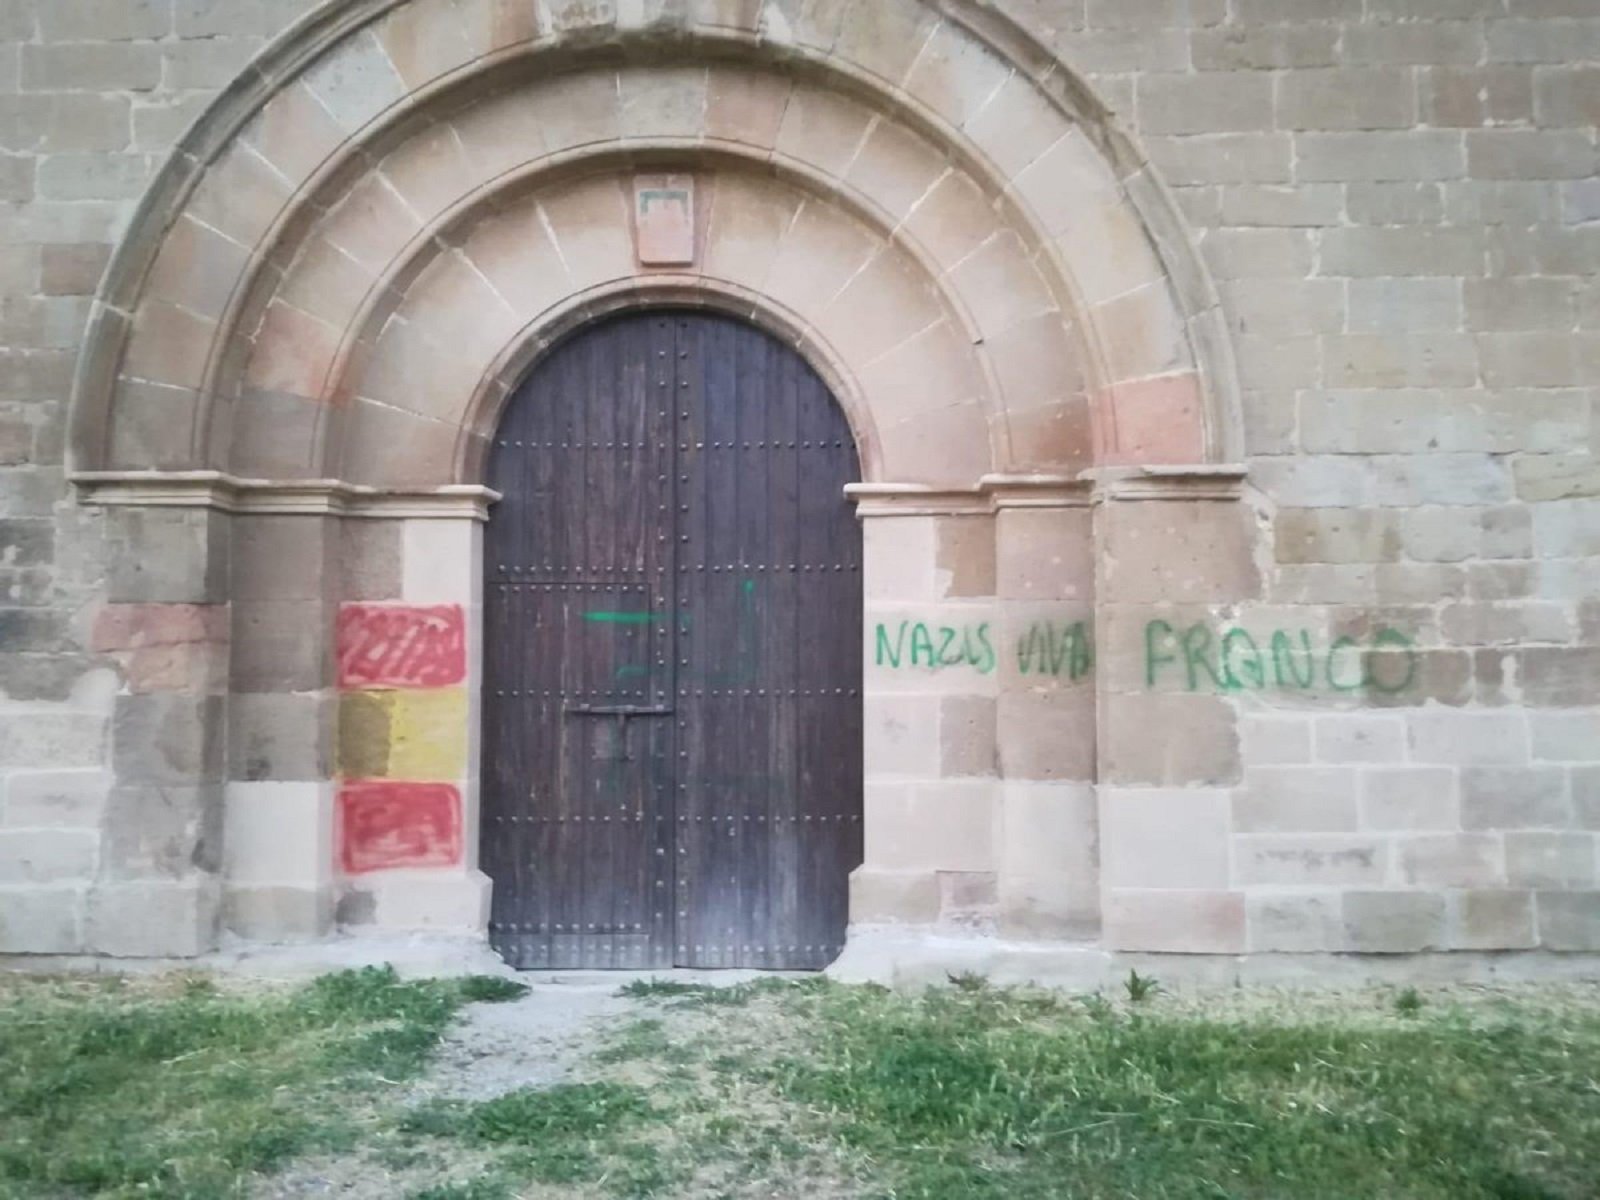 Aparecen pintadas españolistas en un histórico monasterio del siglo XII